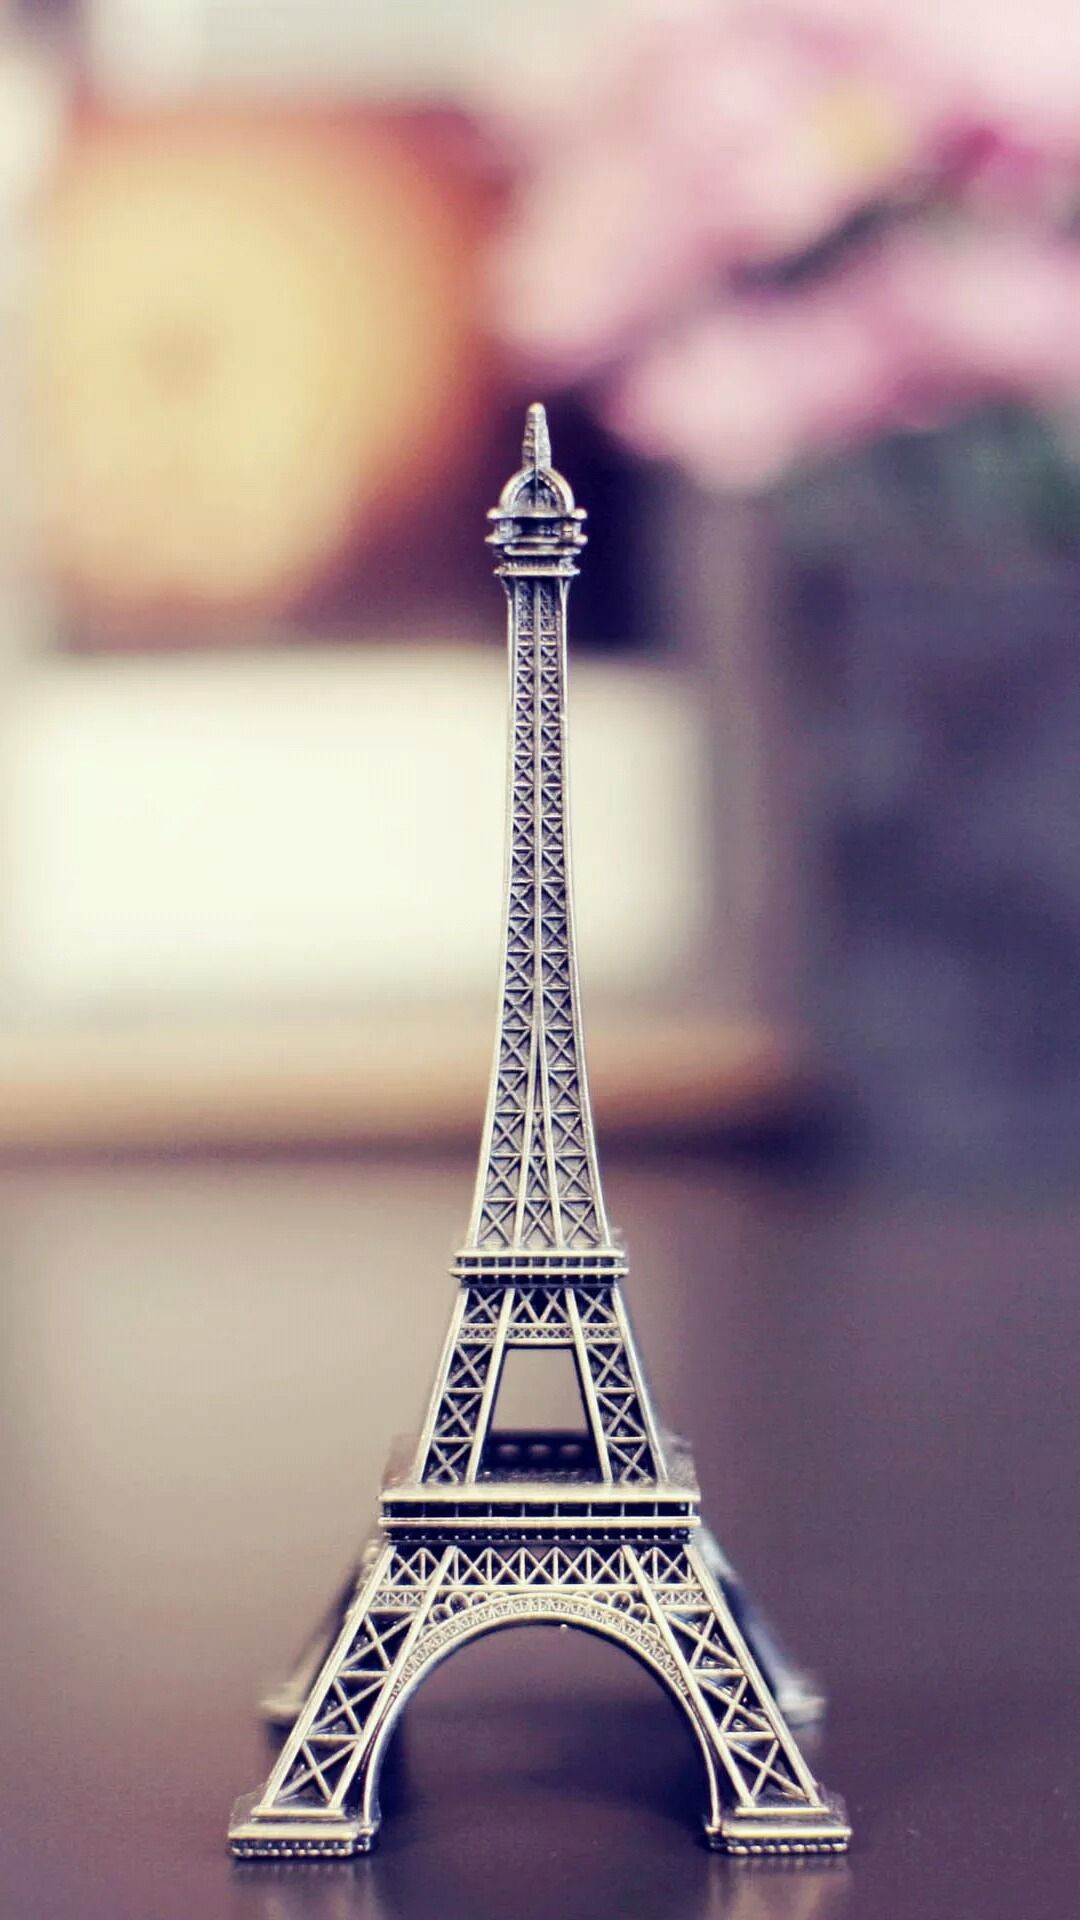 Fondos de pantalla de Vintage Eiffel Tower, Paris para iPhone. Ciudad románica. Toque para